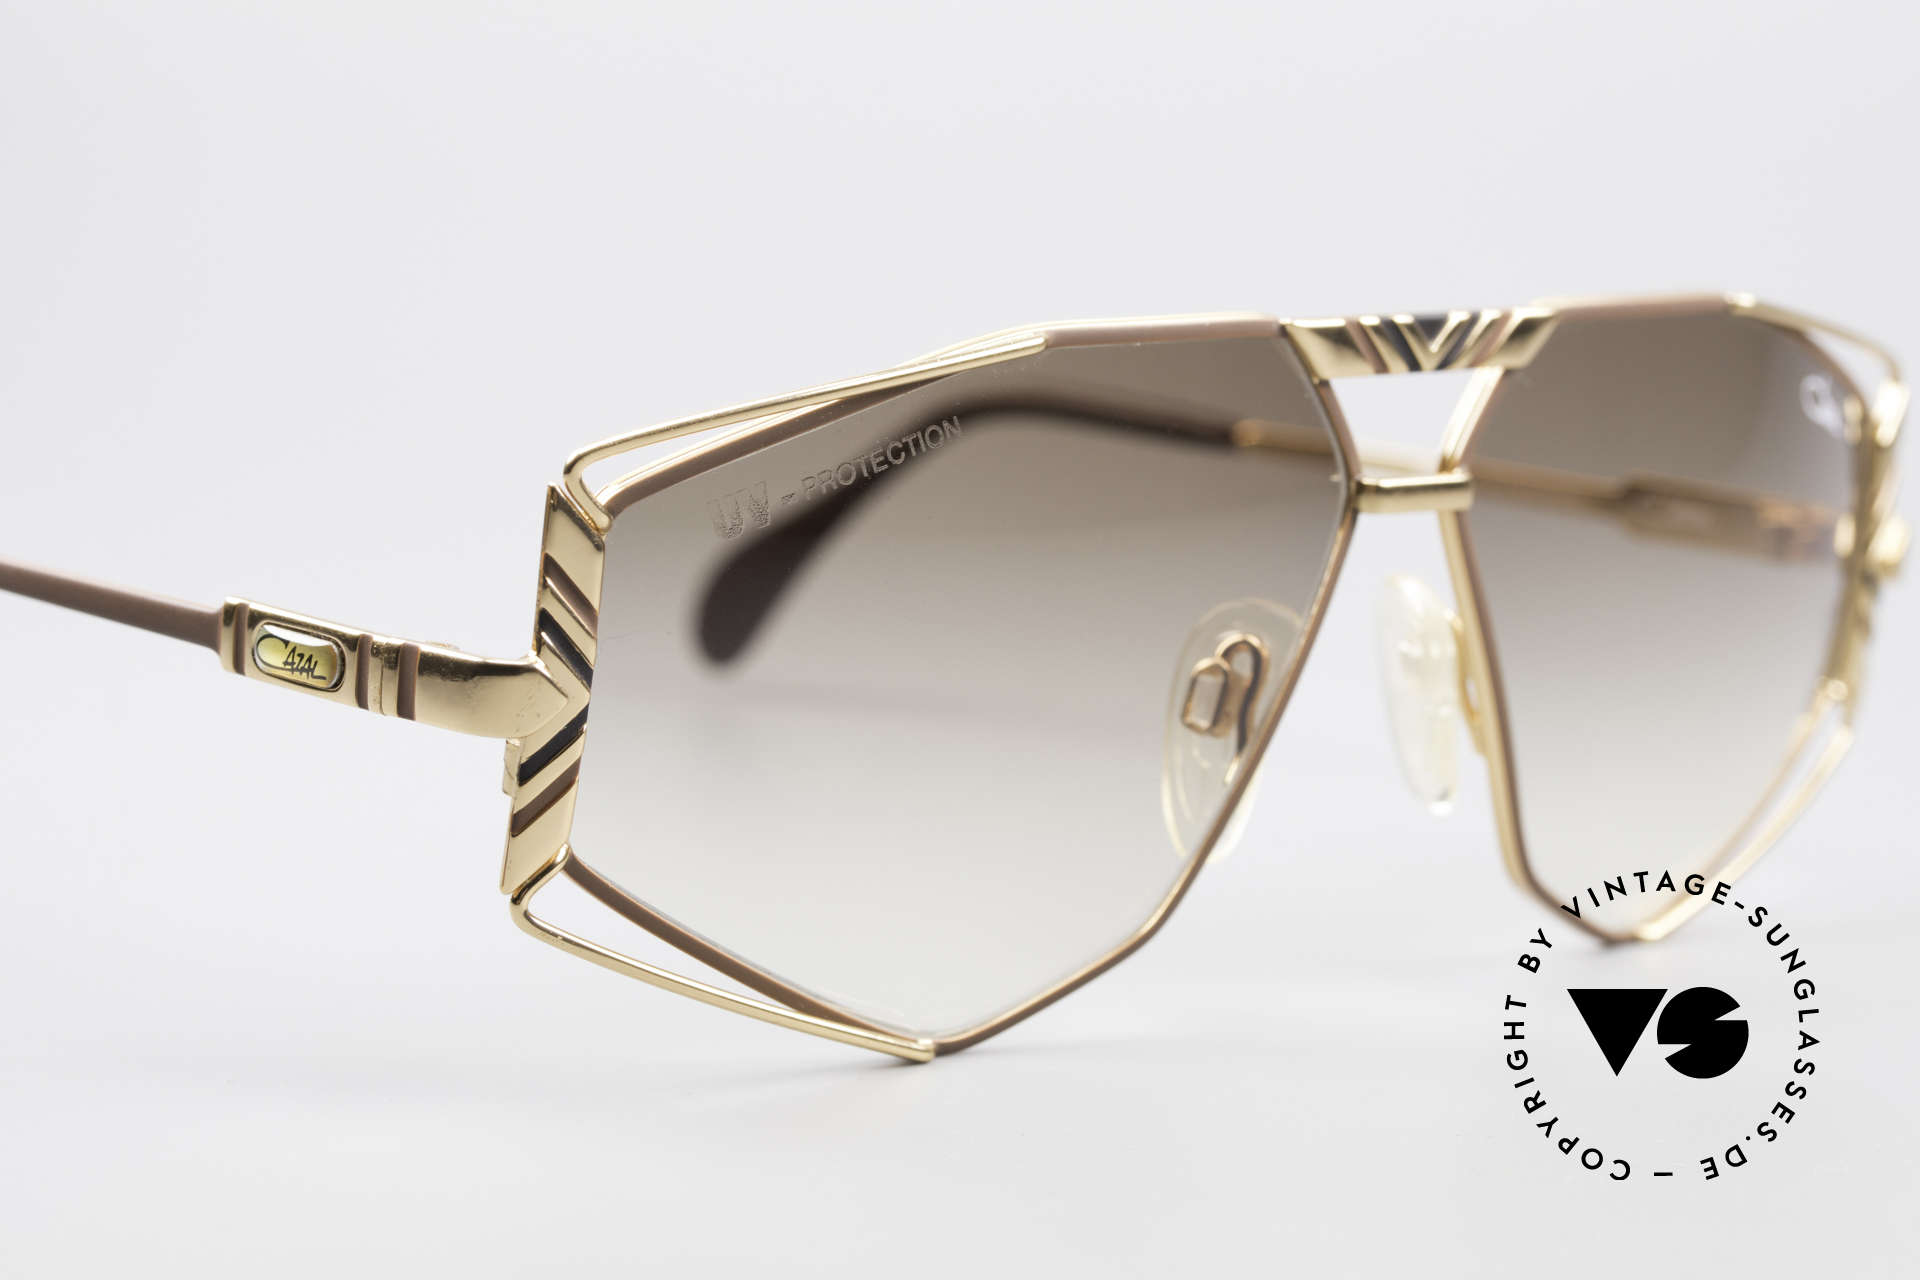 Cazal 956 Cari Zalloni Vintage Brille, KEINE RETROBRILLE, sondern ein altes ORIGINAL, Passend für Herren und Damen